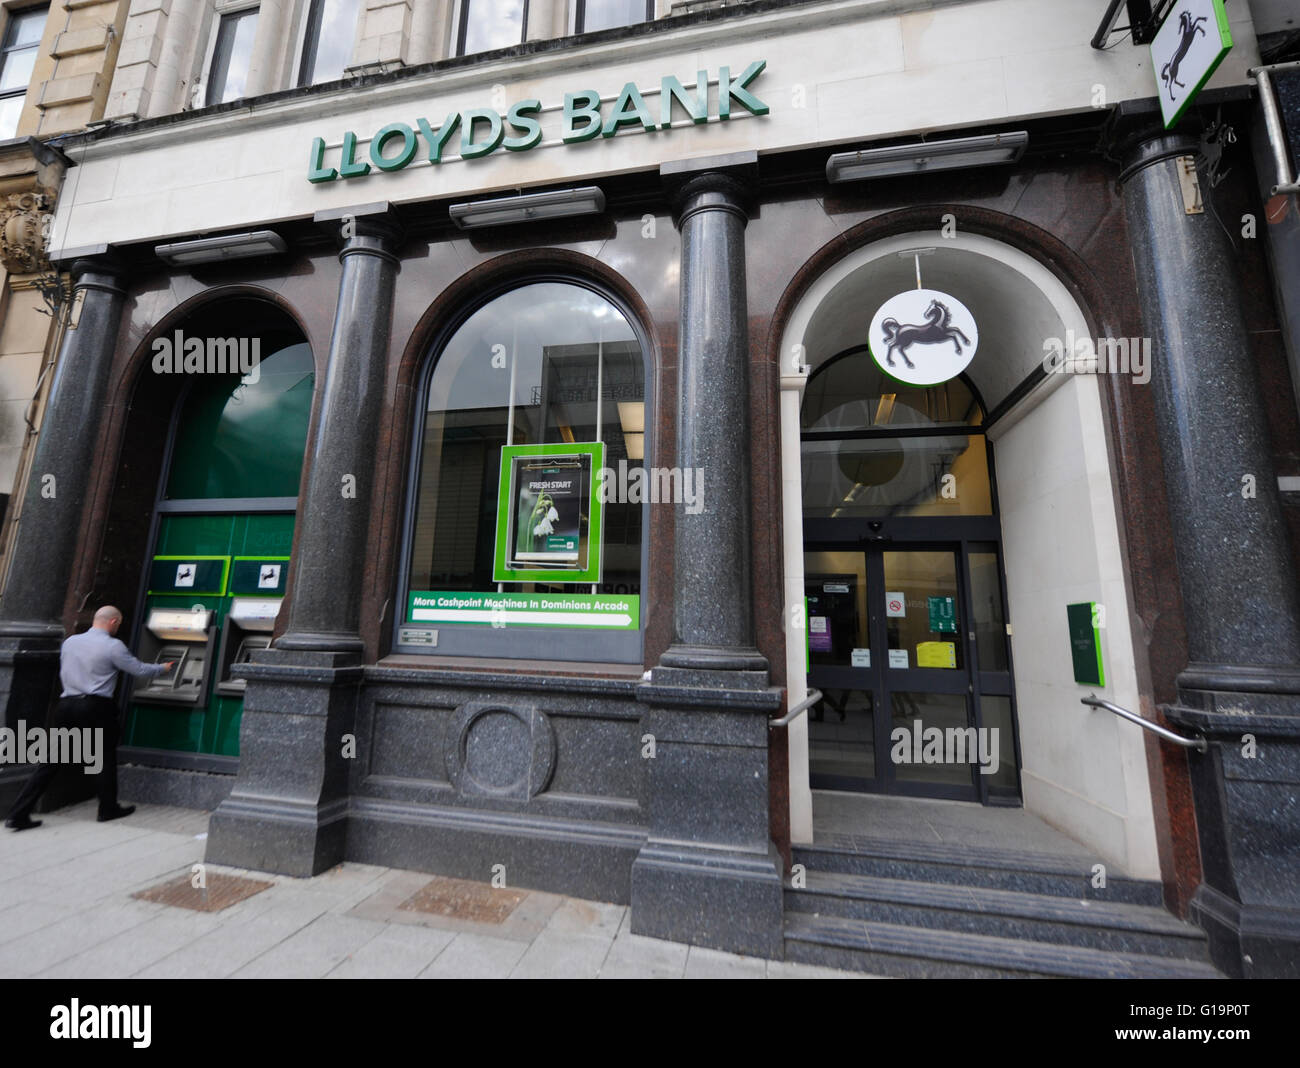 bank, banking, LLoyds,ATM,UK Stock Photo